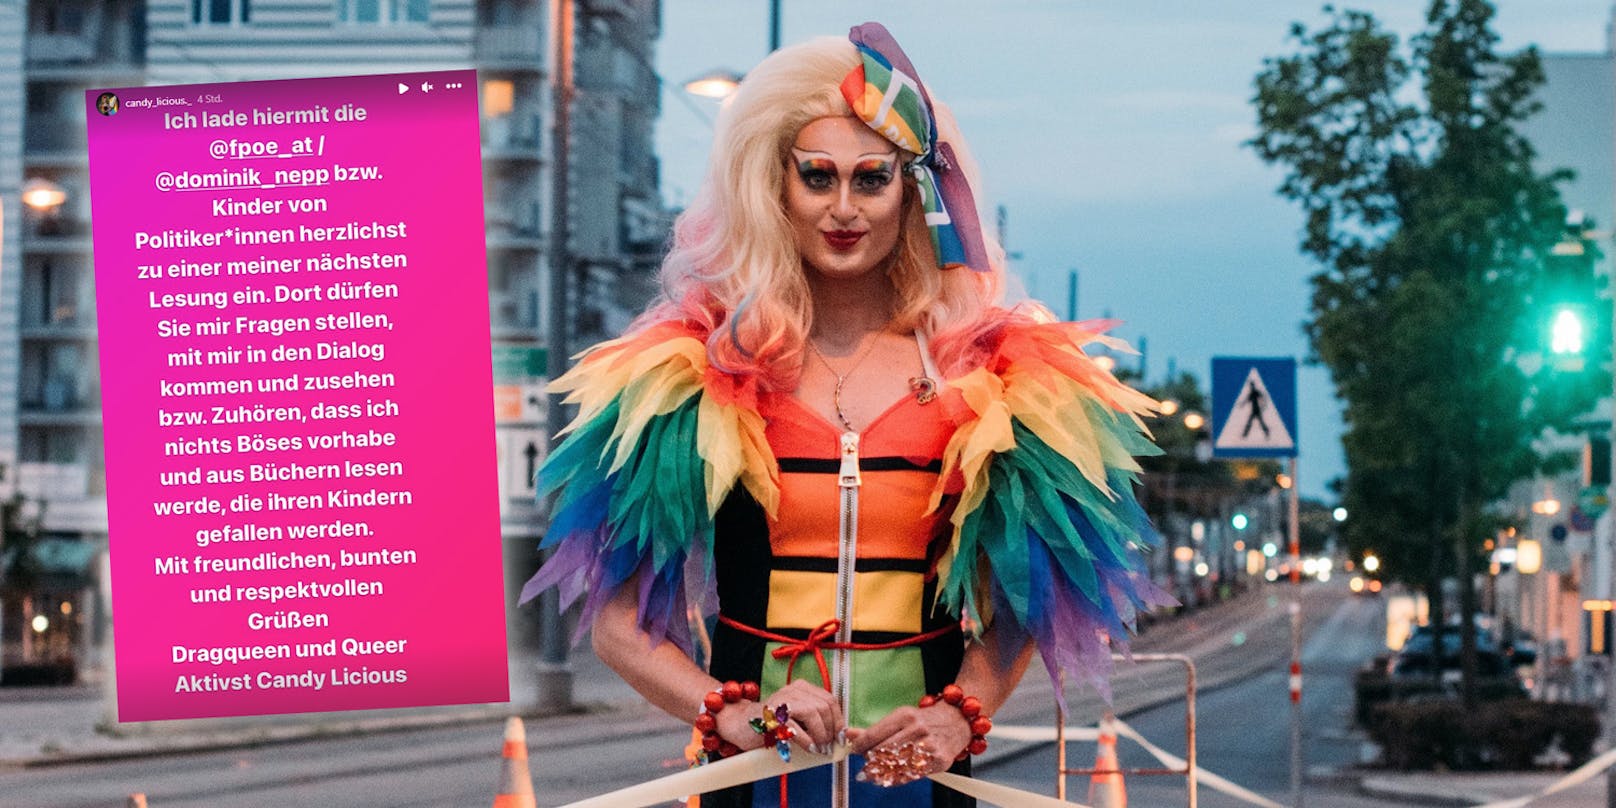 Drag-Queen Candy Licious lädt FPÖ-Politiker und deren Kinder zur nächsten Lesung ein.